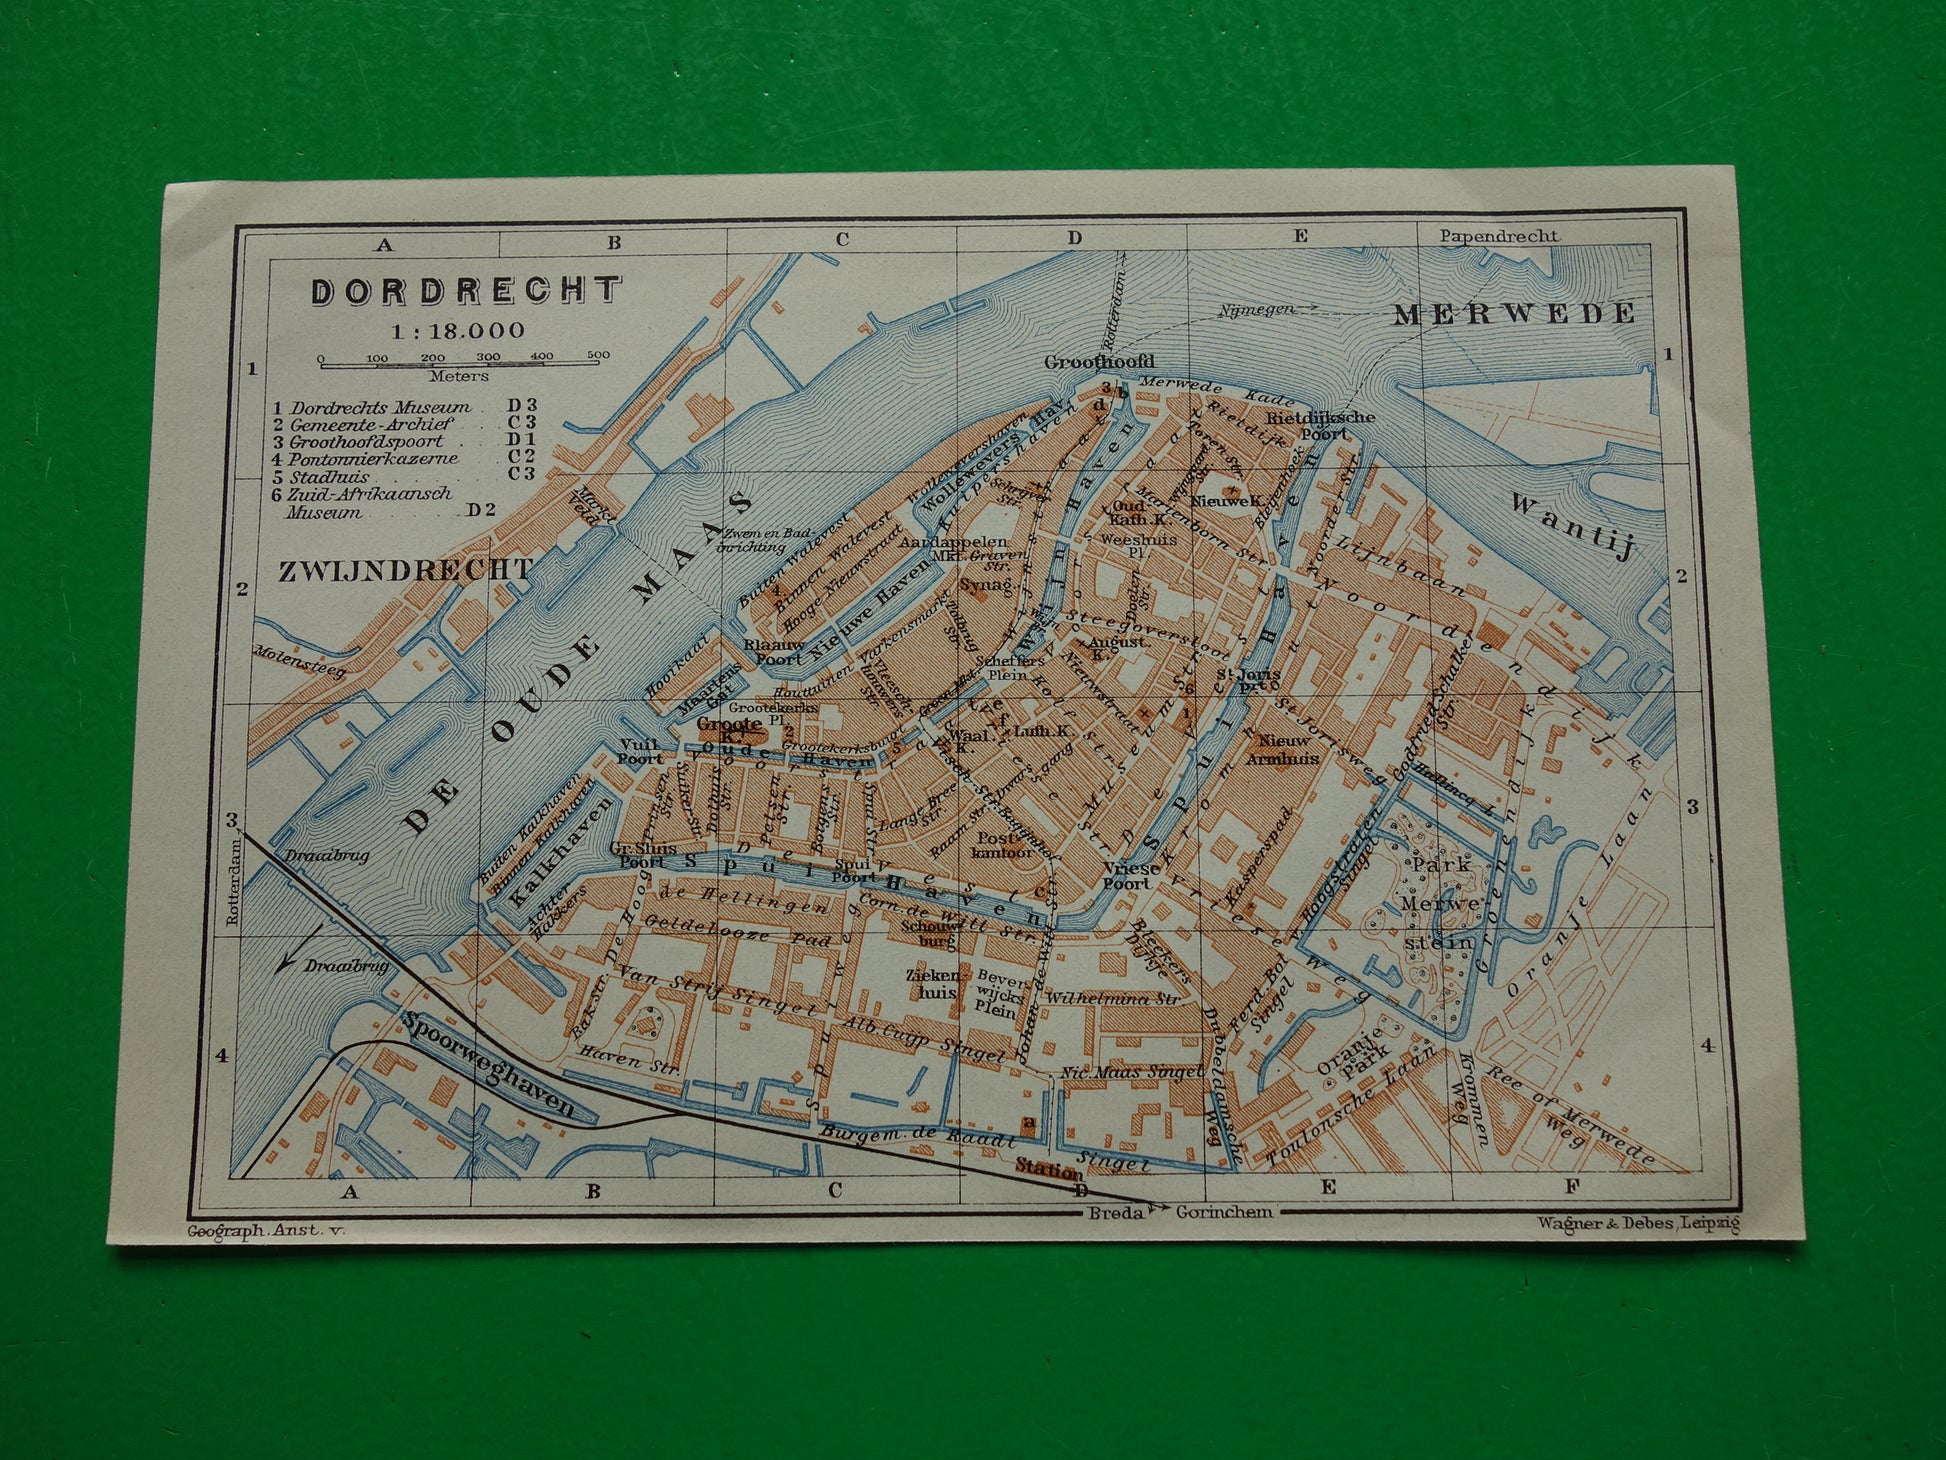 DORDRECHT oude kaart van Dordrecht uit 1910 kleine originele antieke plattegrond Nederland